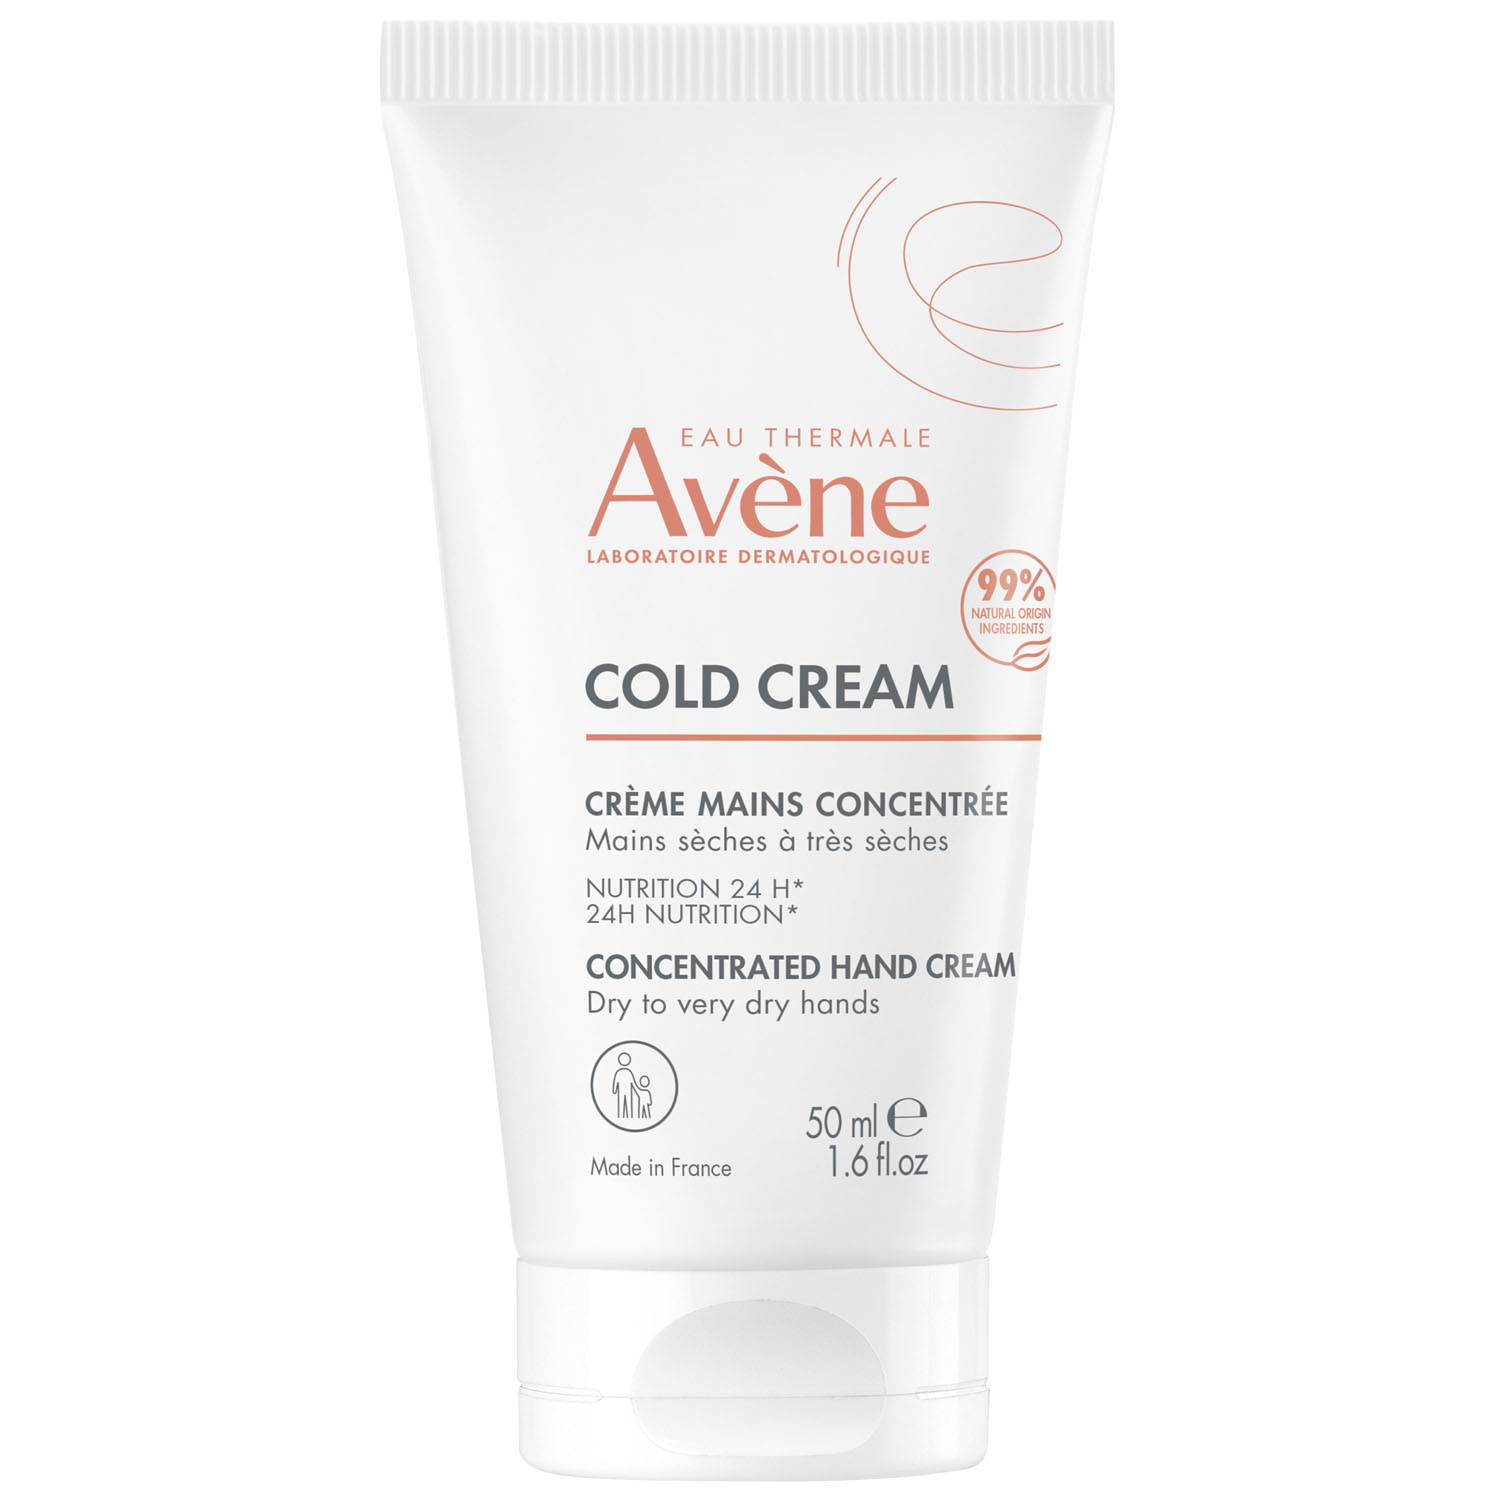 Avene Насыщенный крем для рук с колд-кремом для сухой и очень сухой кожи 2+, 50 мл (Avene, Cold Cream)